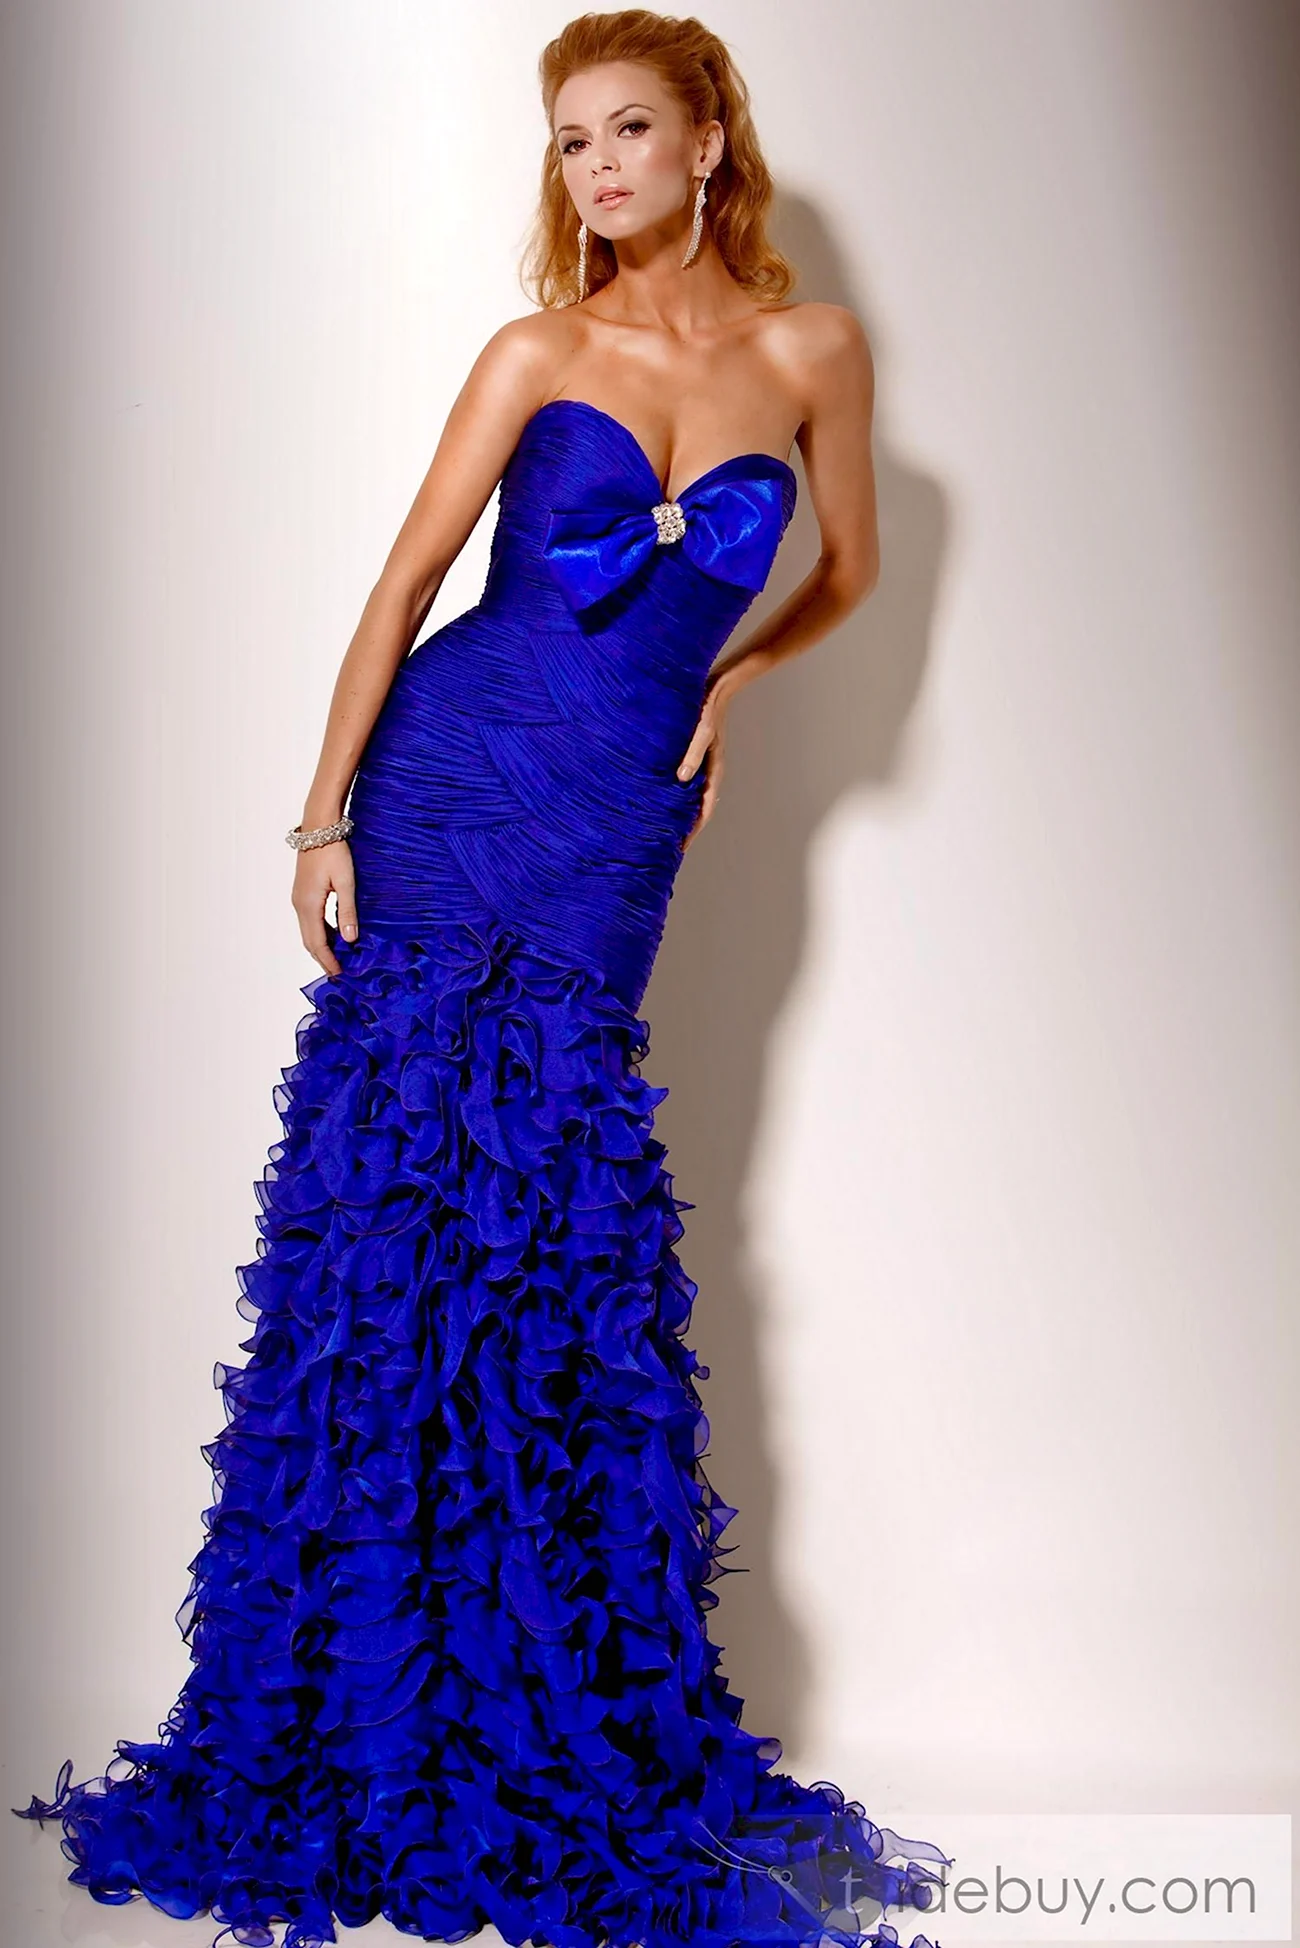 Шикарное синее платье. Красивая картинка